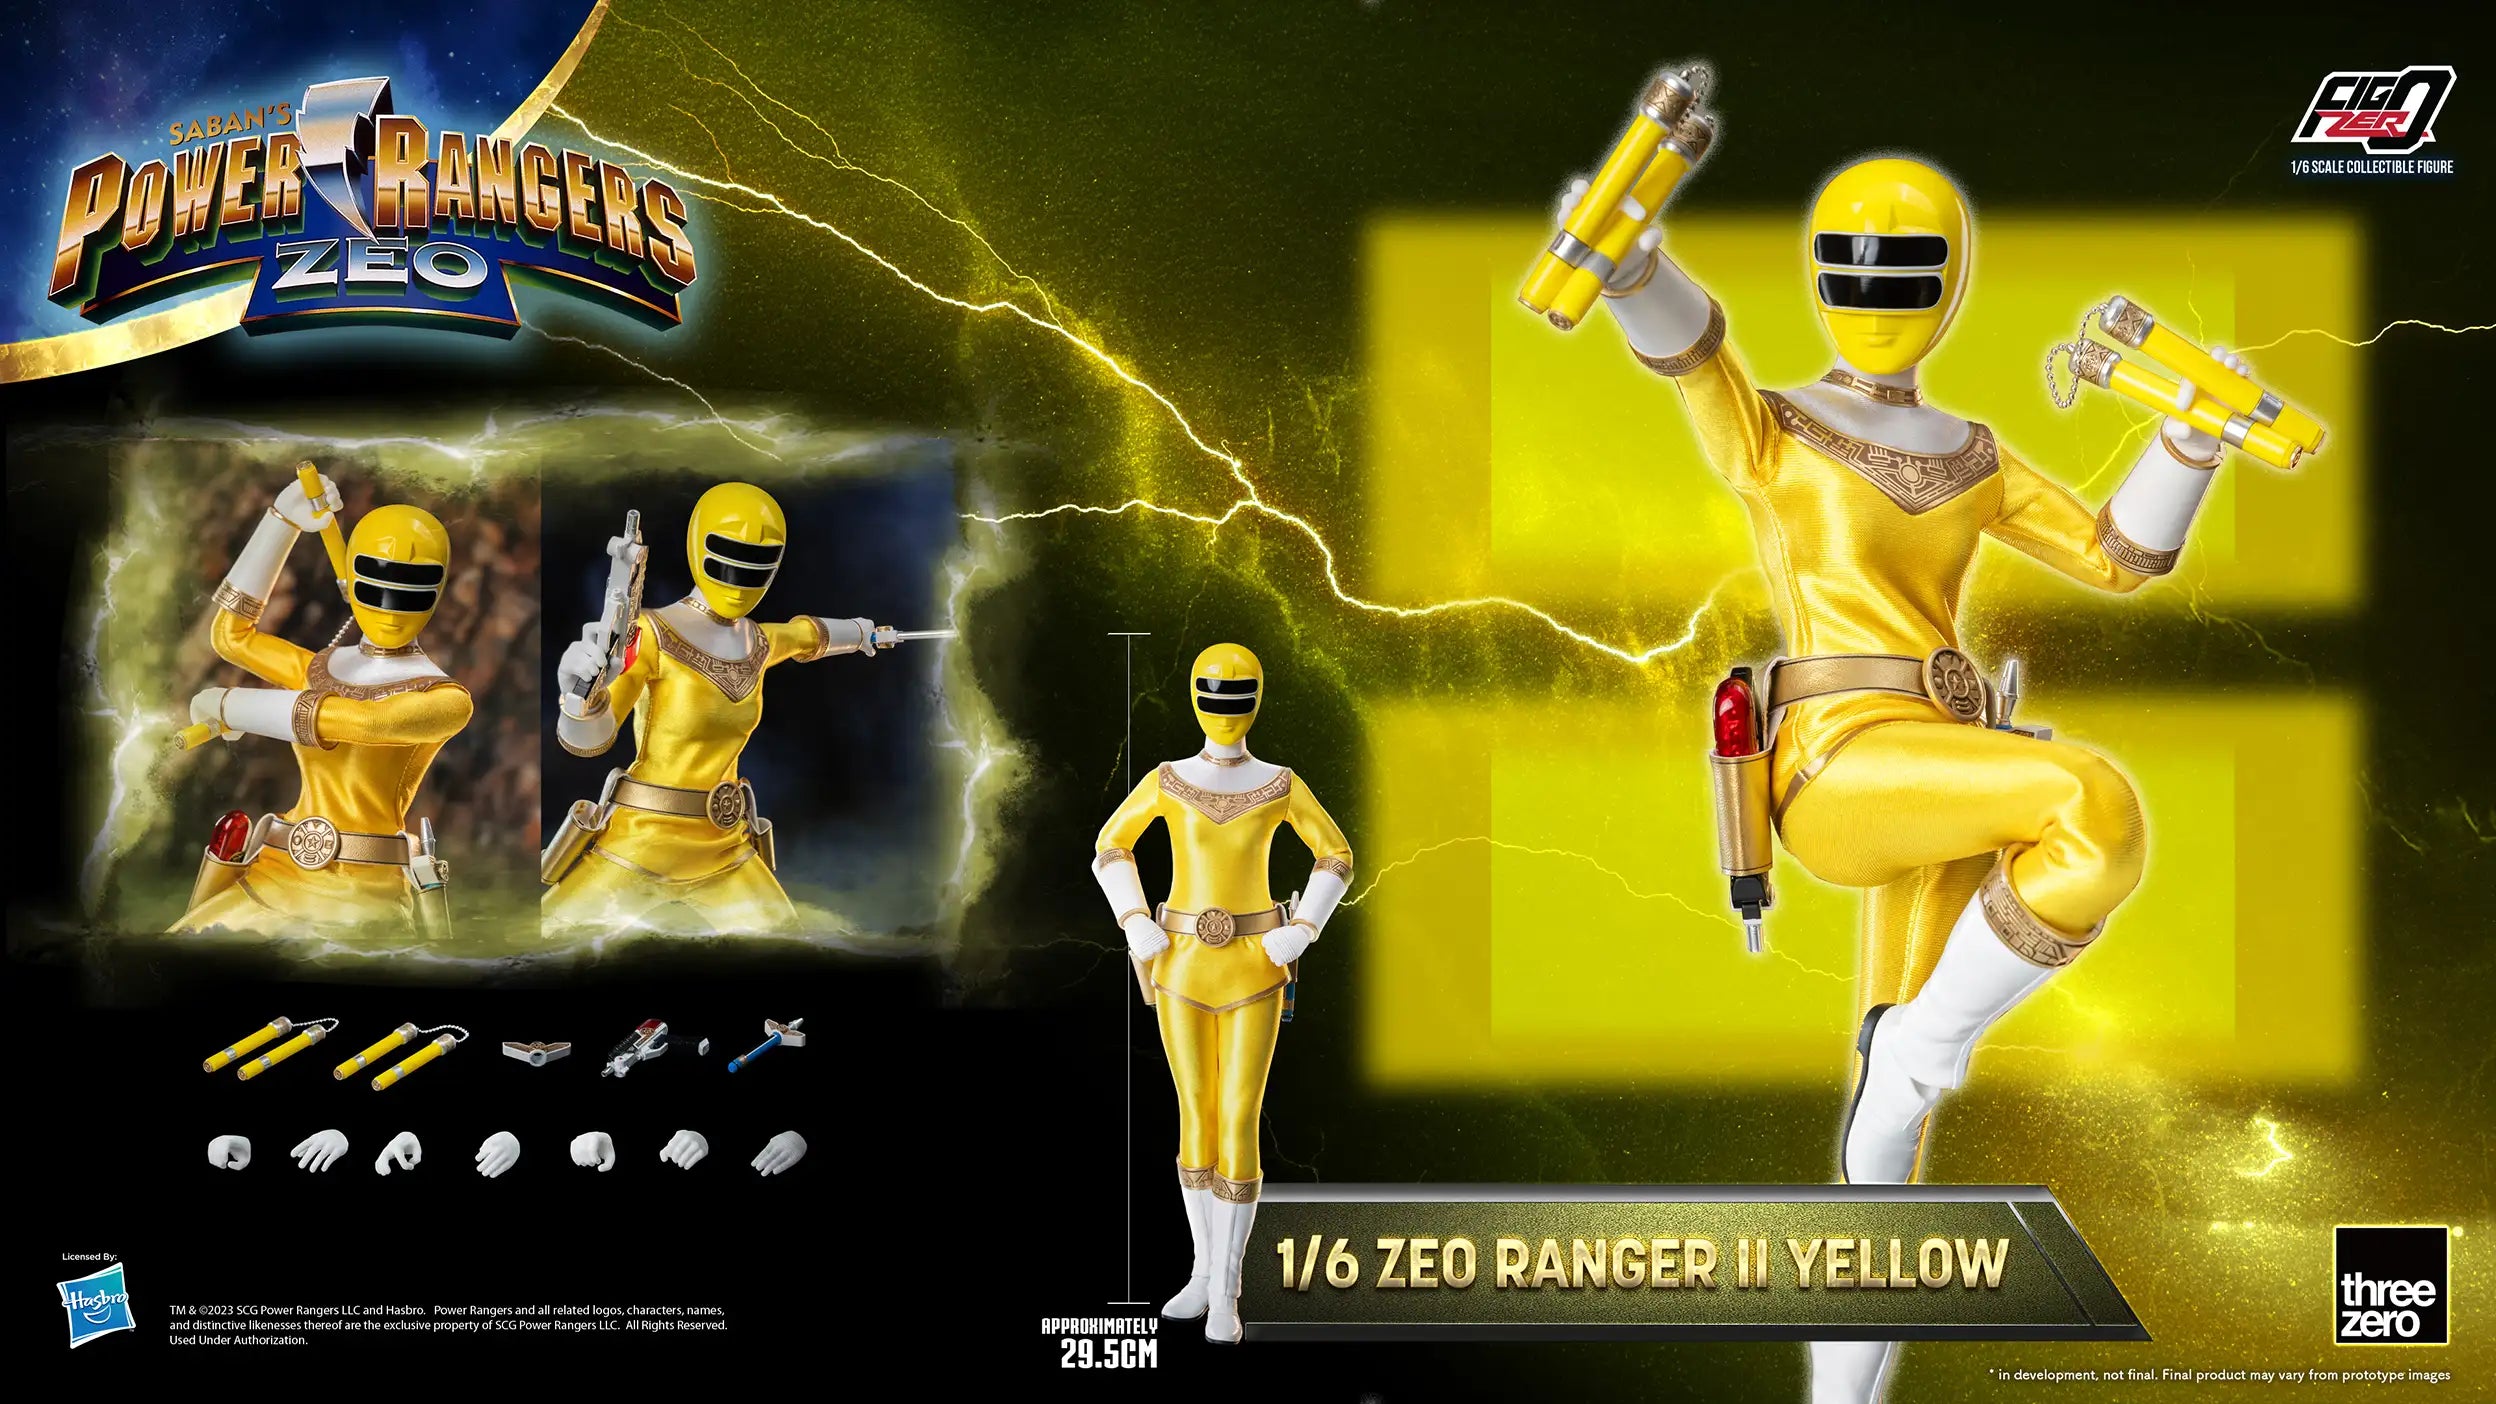 PRE-ORDER threezero - FigZero - Power Rangers Zeo - Zeo Ranger II Yellow 1/6